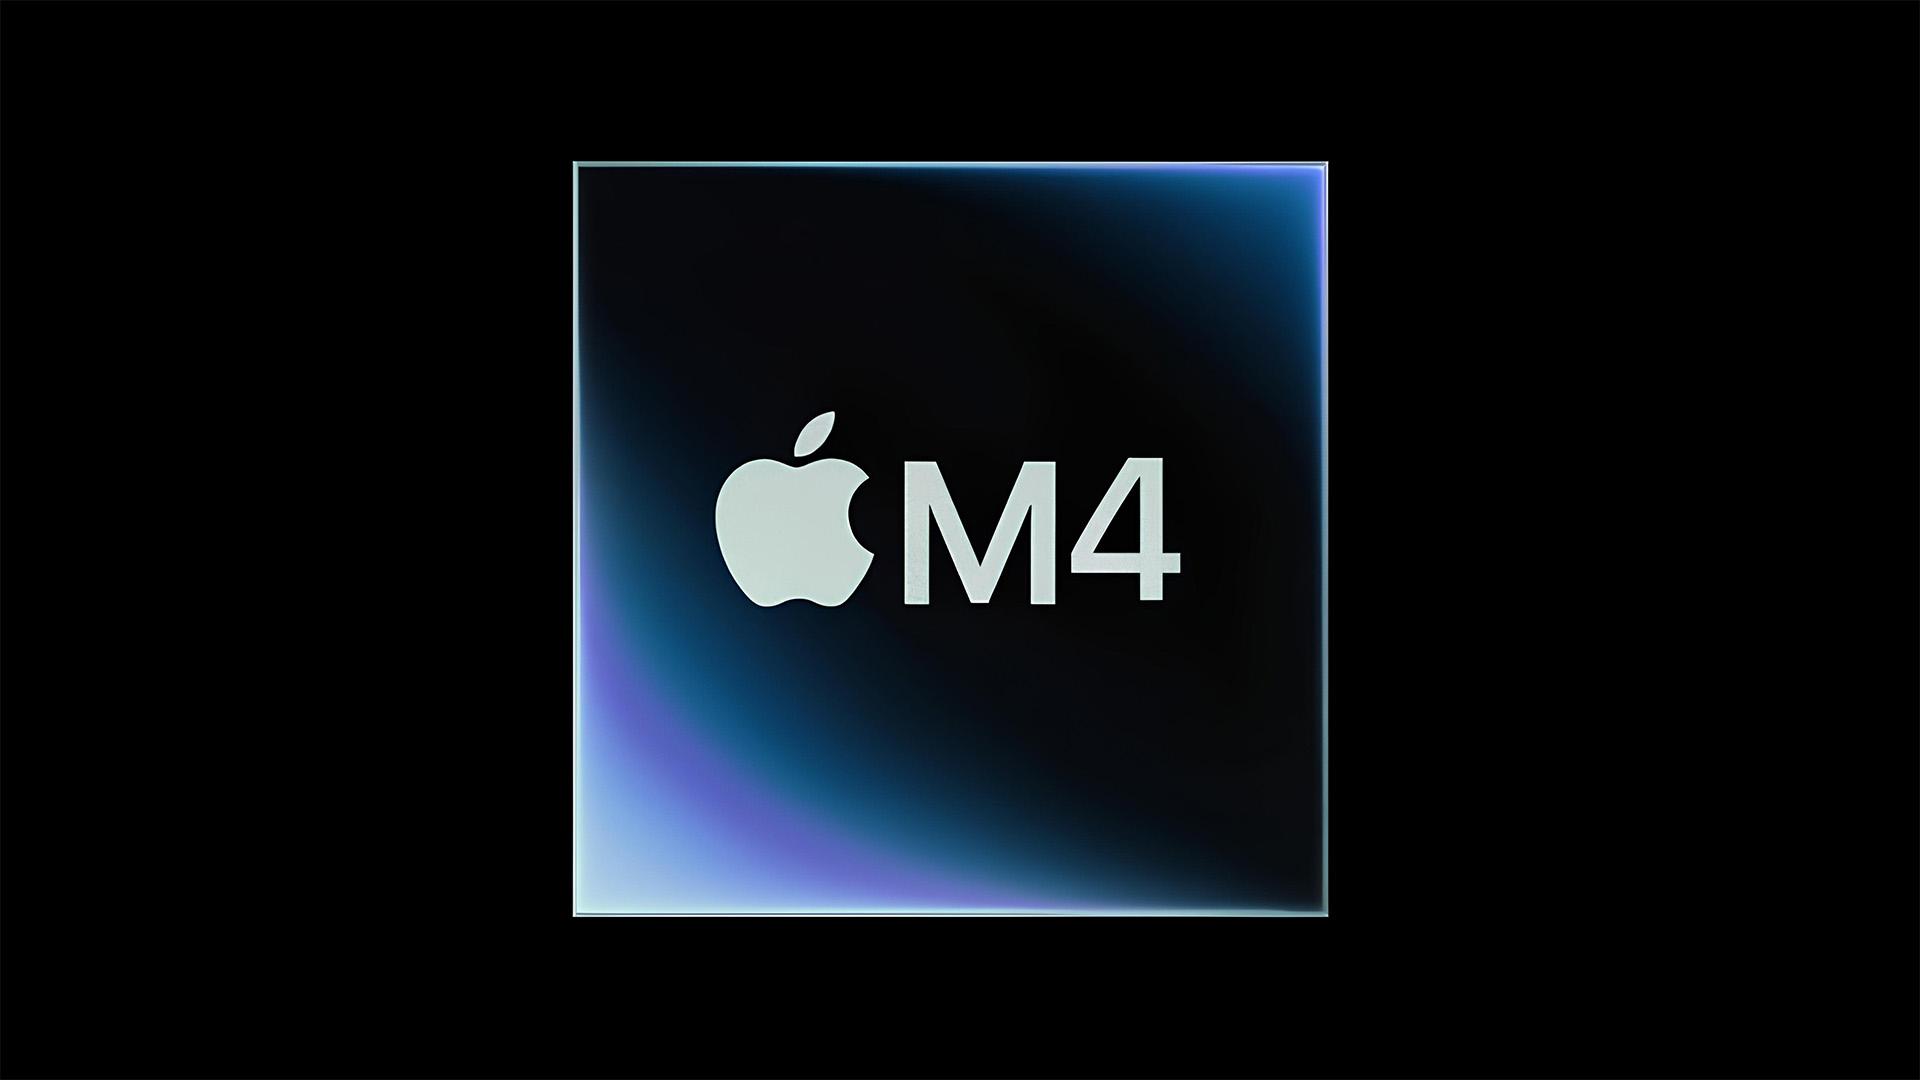 Chip-ul Apple M4: pret, performanta, data de lansare si altele